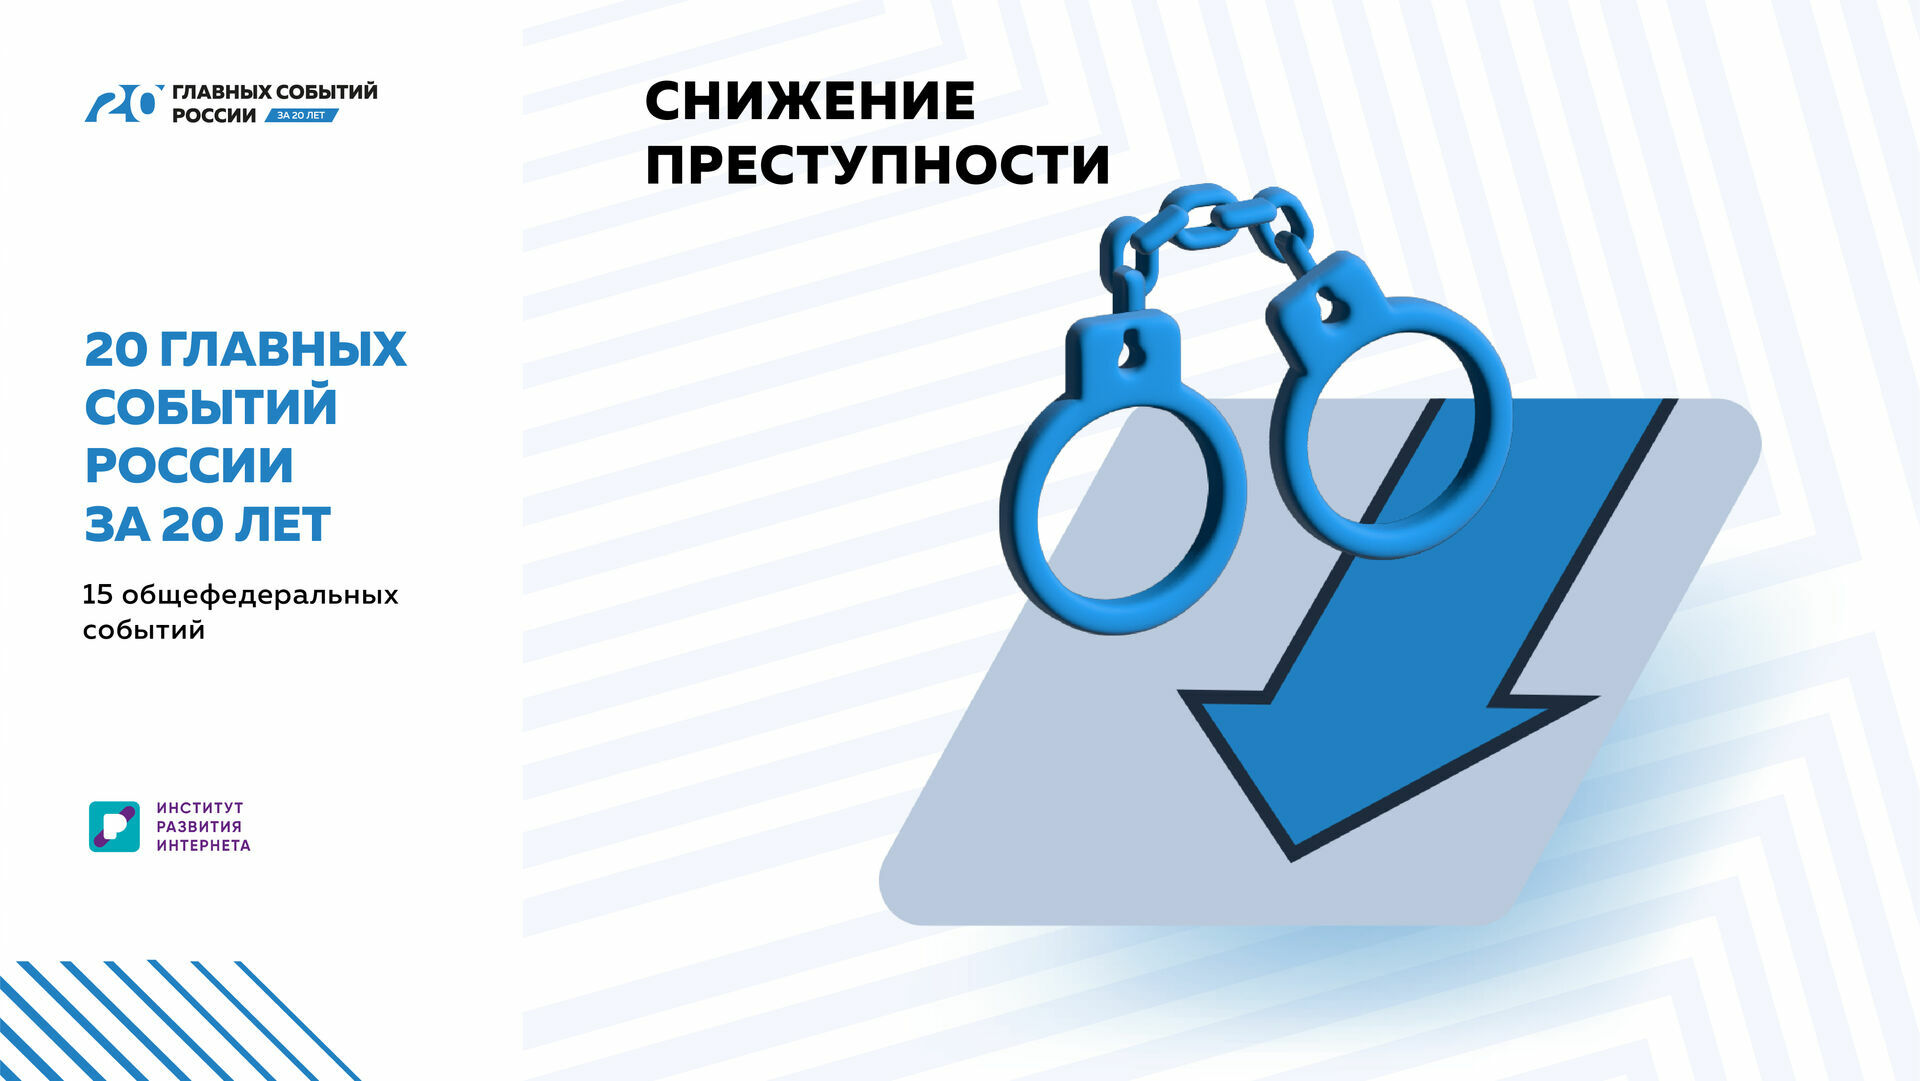 20 главных событий России за 20 лет:снижение преступности и социально опасных явлений